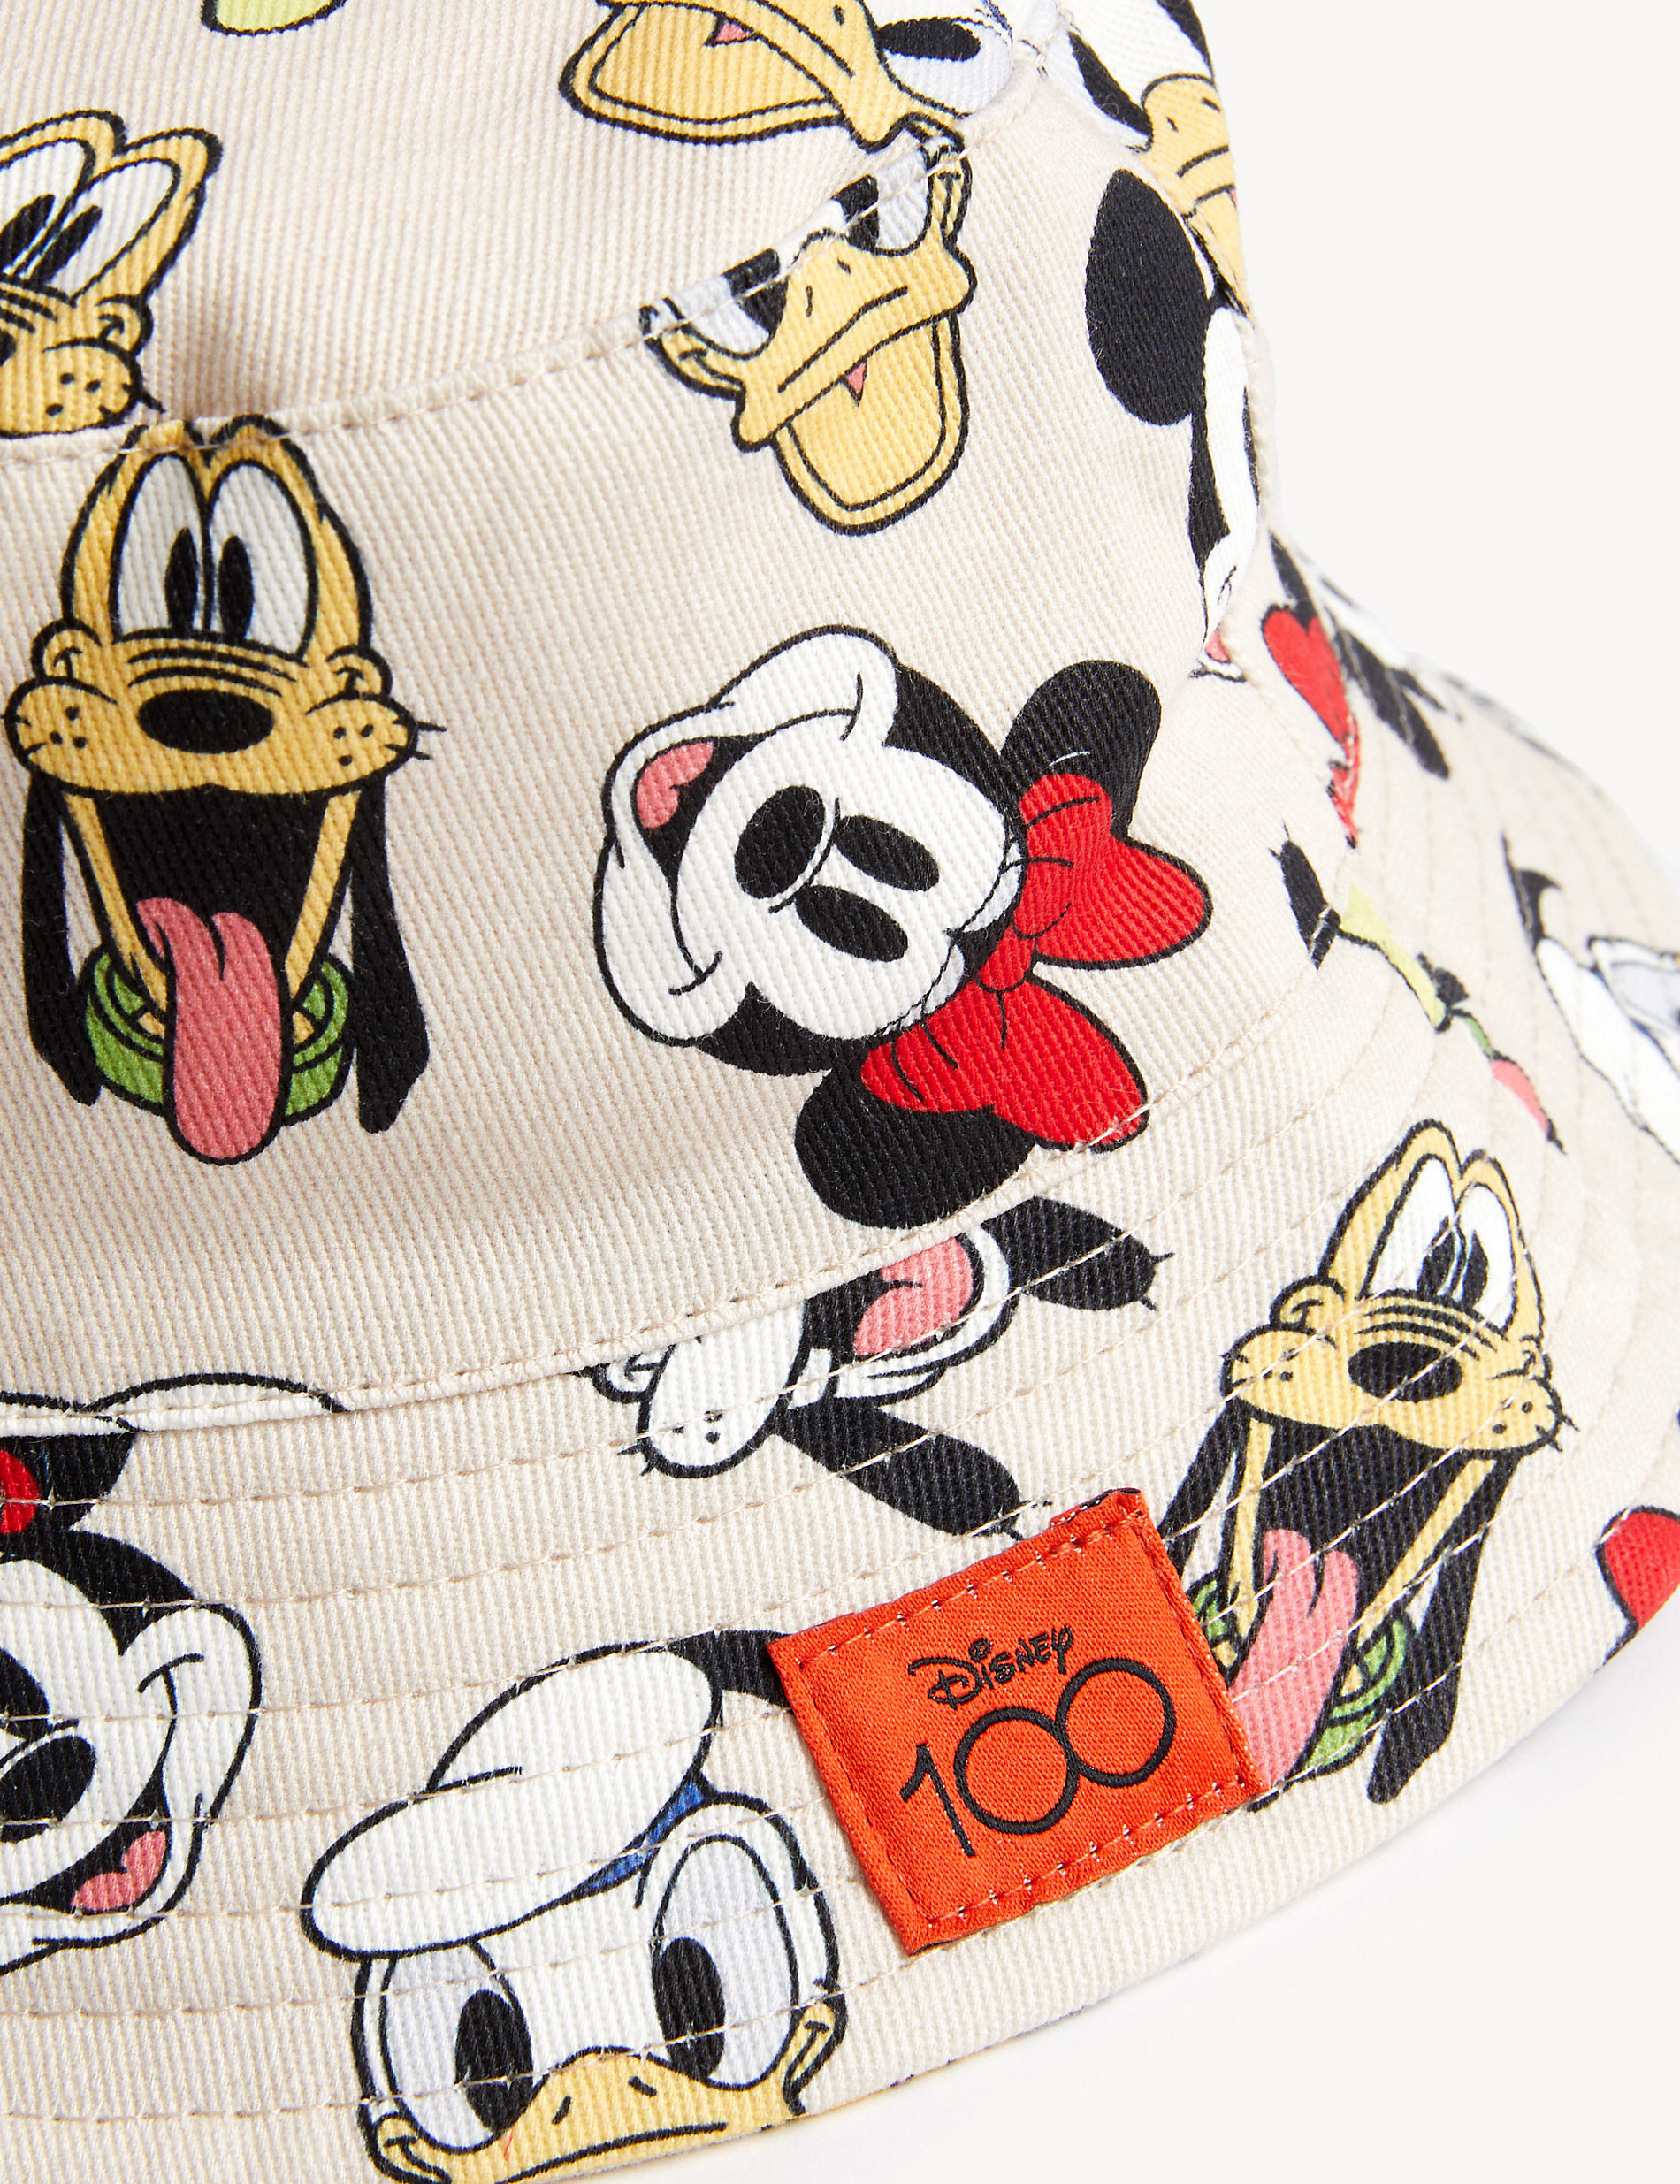 قبعة شمسية Mickey Mouse™ للأطفال من القطن الصافي (12 شهرًا - 6 سنوات)